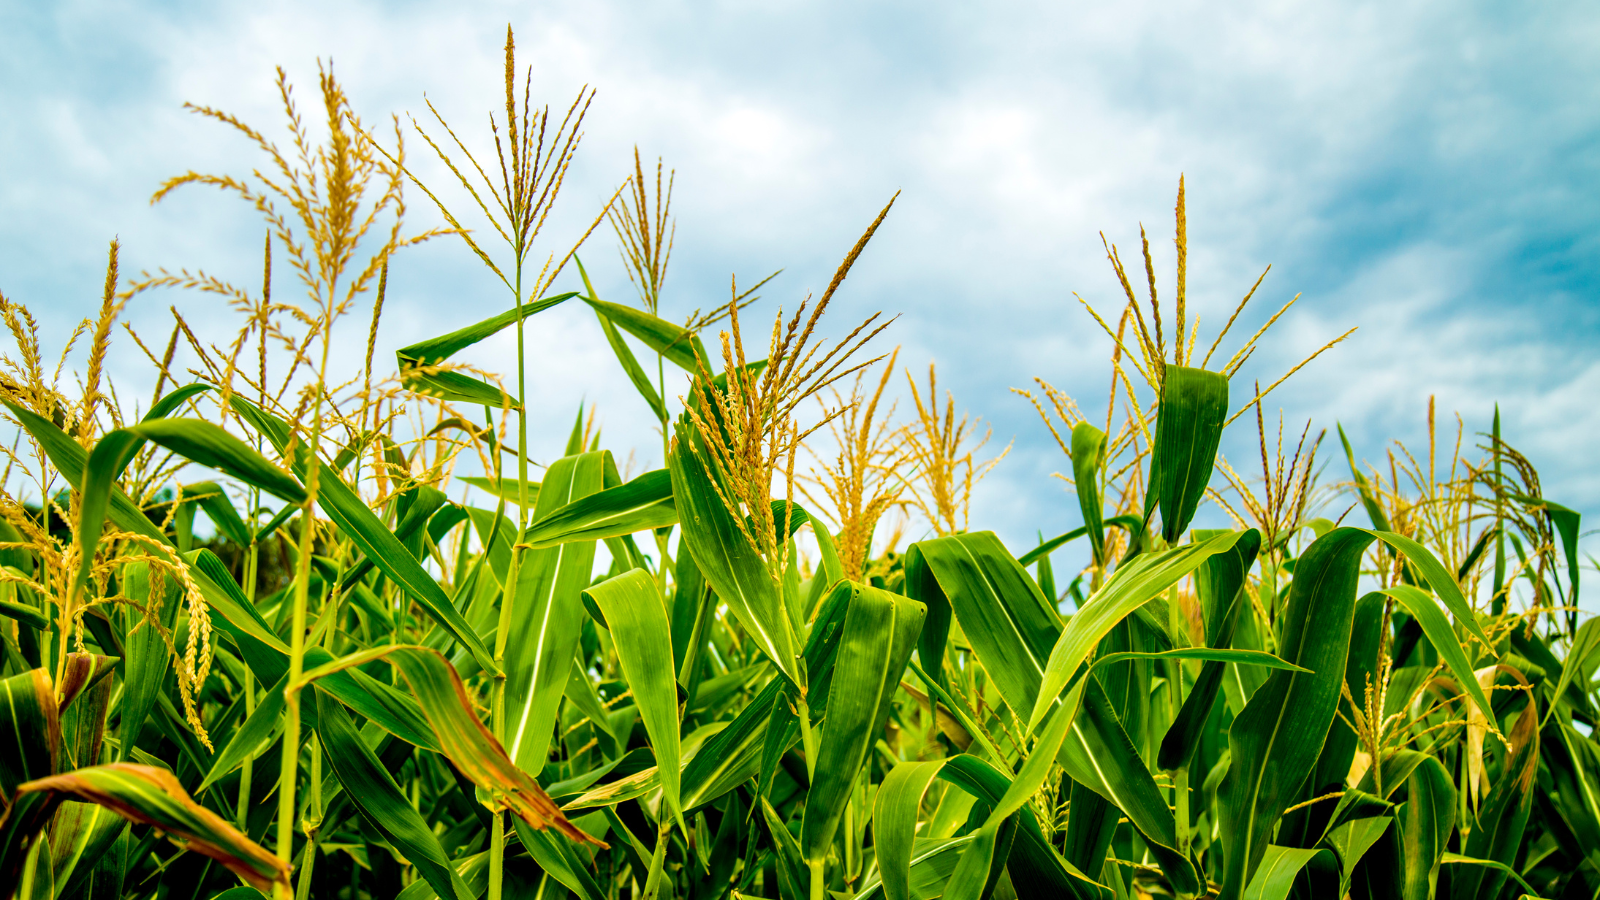 L’avis de l’ANSES sur les nouveaux OGM (NGT) démontre l’absence de fondement scientifique du règlement européen et doit conduire à remettre à plat le dossier 